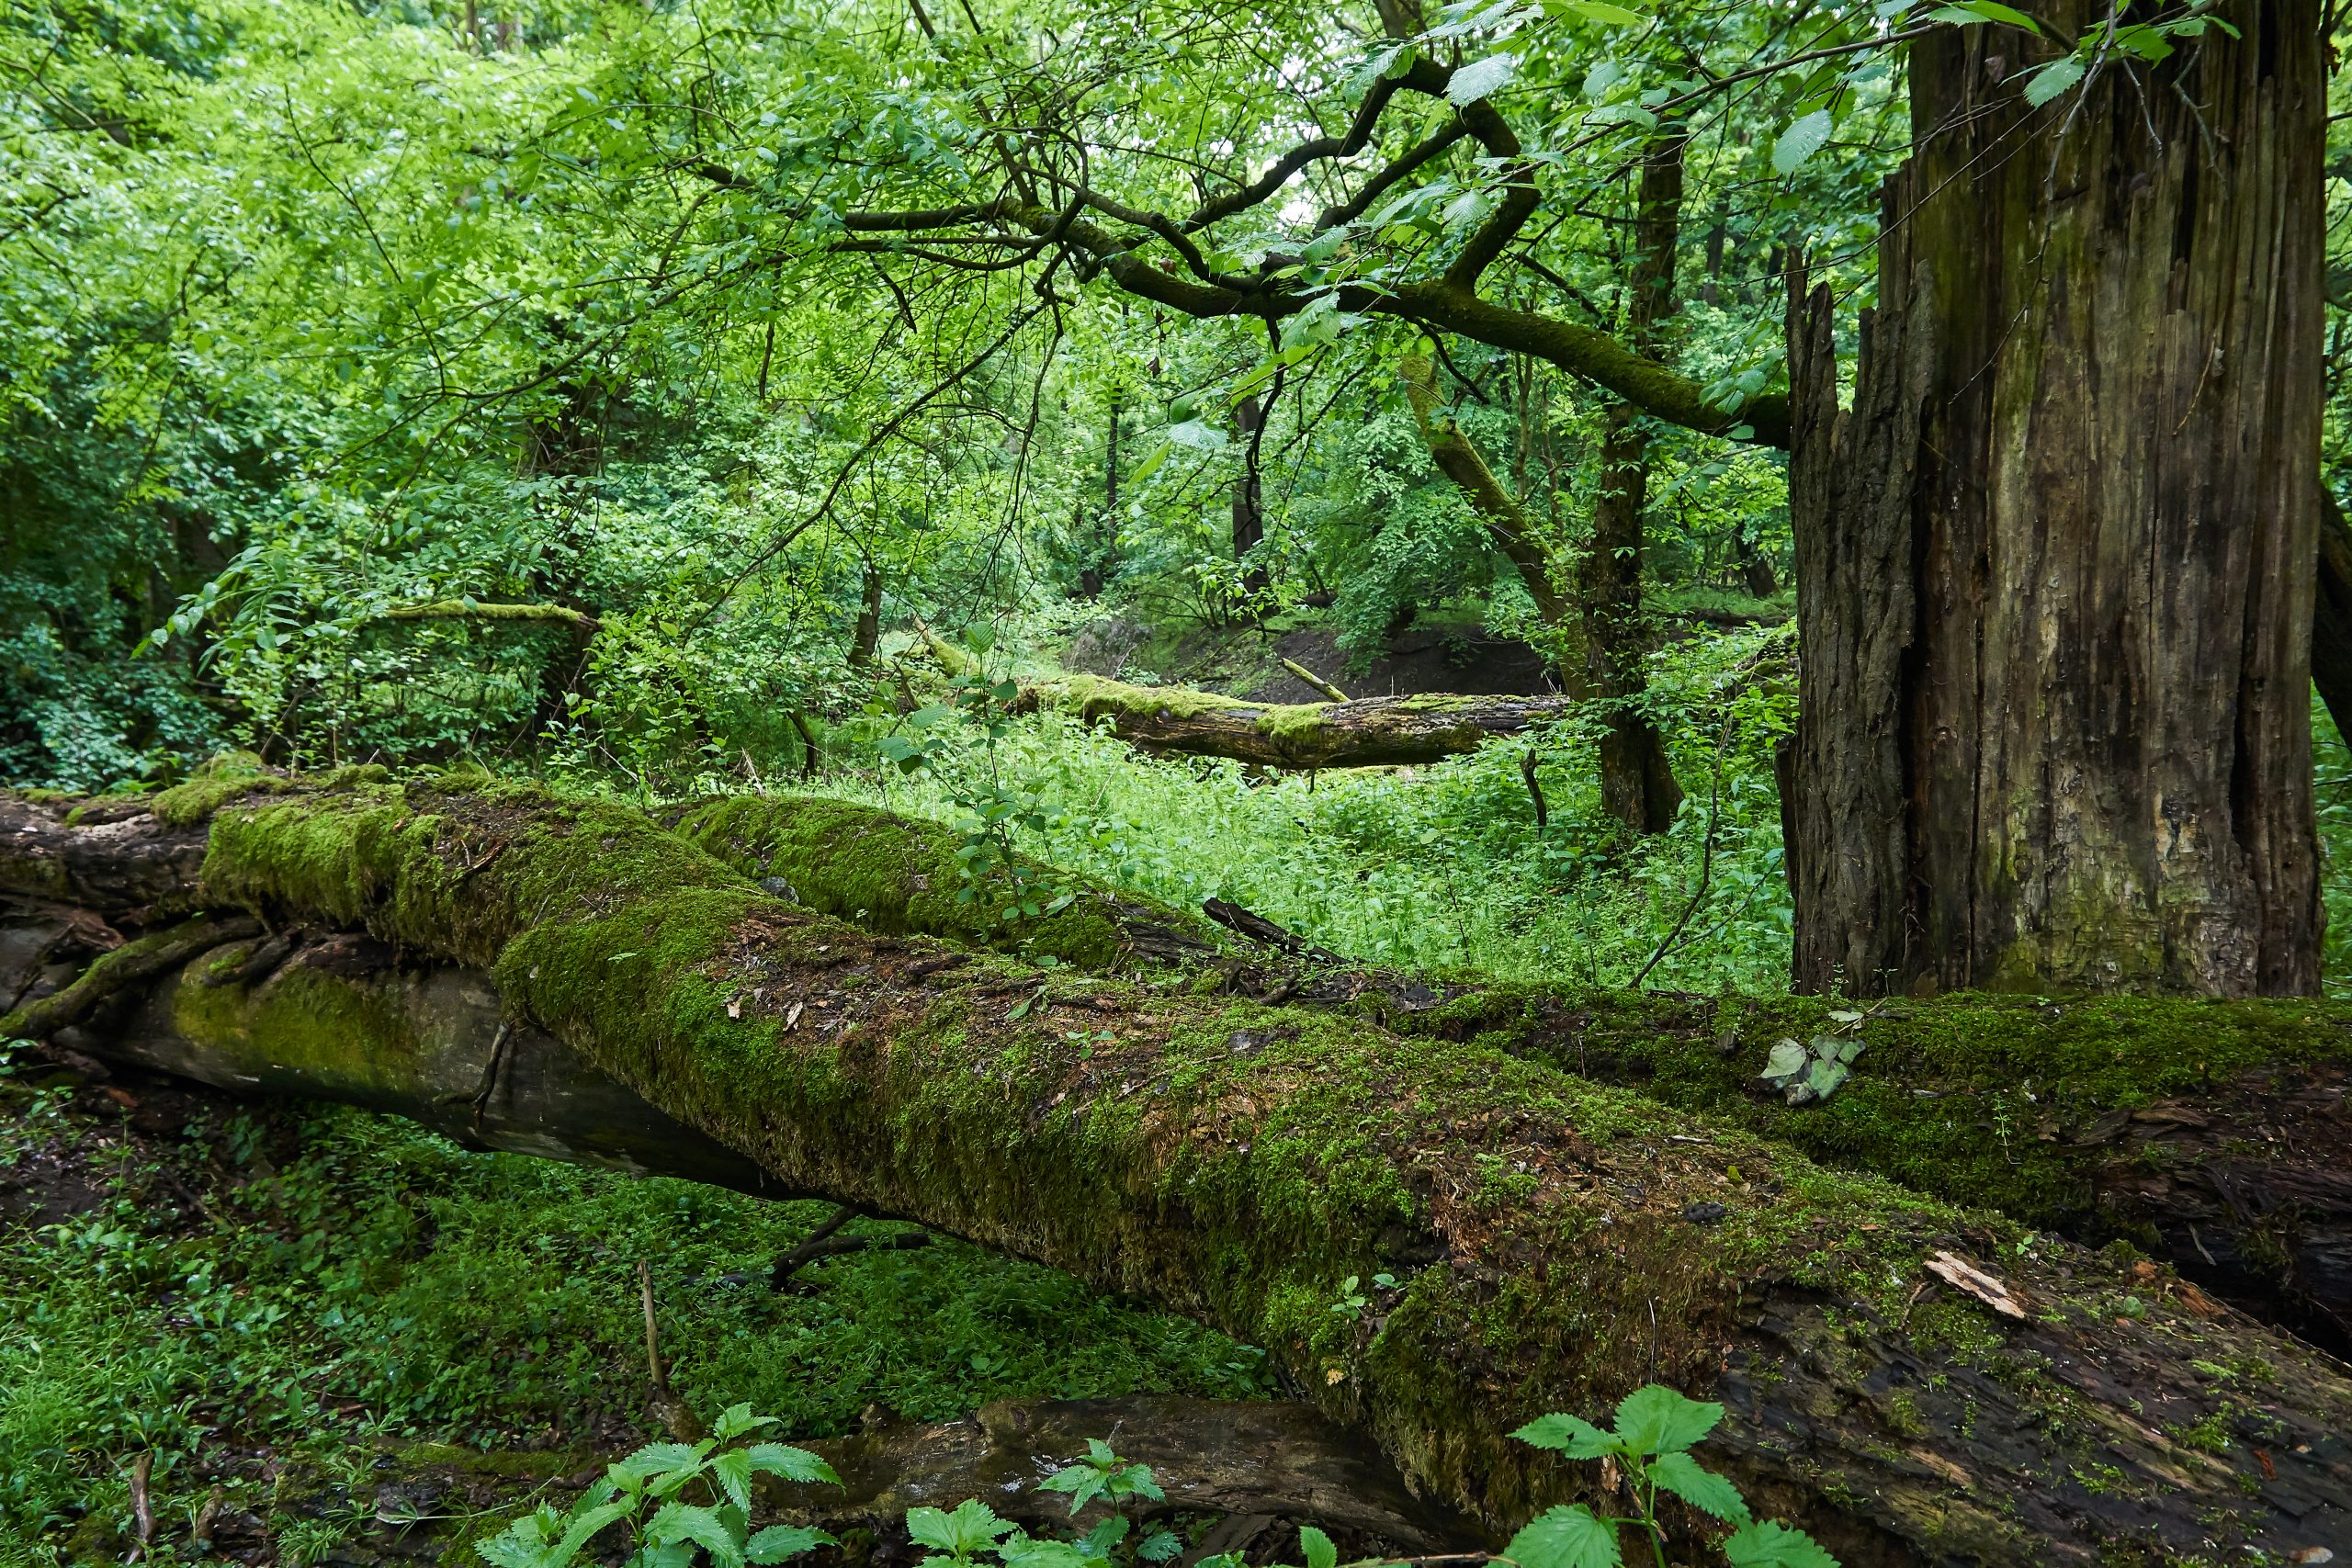 Aj mŕtve drevo zohráva v lužnom lese dôležitú úlohu – ovplyvňuje mikroklímu, je substrátom pre rast nových drevín, vo svojej hmote viaže veľké množstvo uhlíka a vyznačuje sa vysokou diverzitou druhov (foto: F. Rovný)